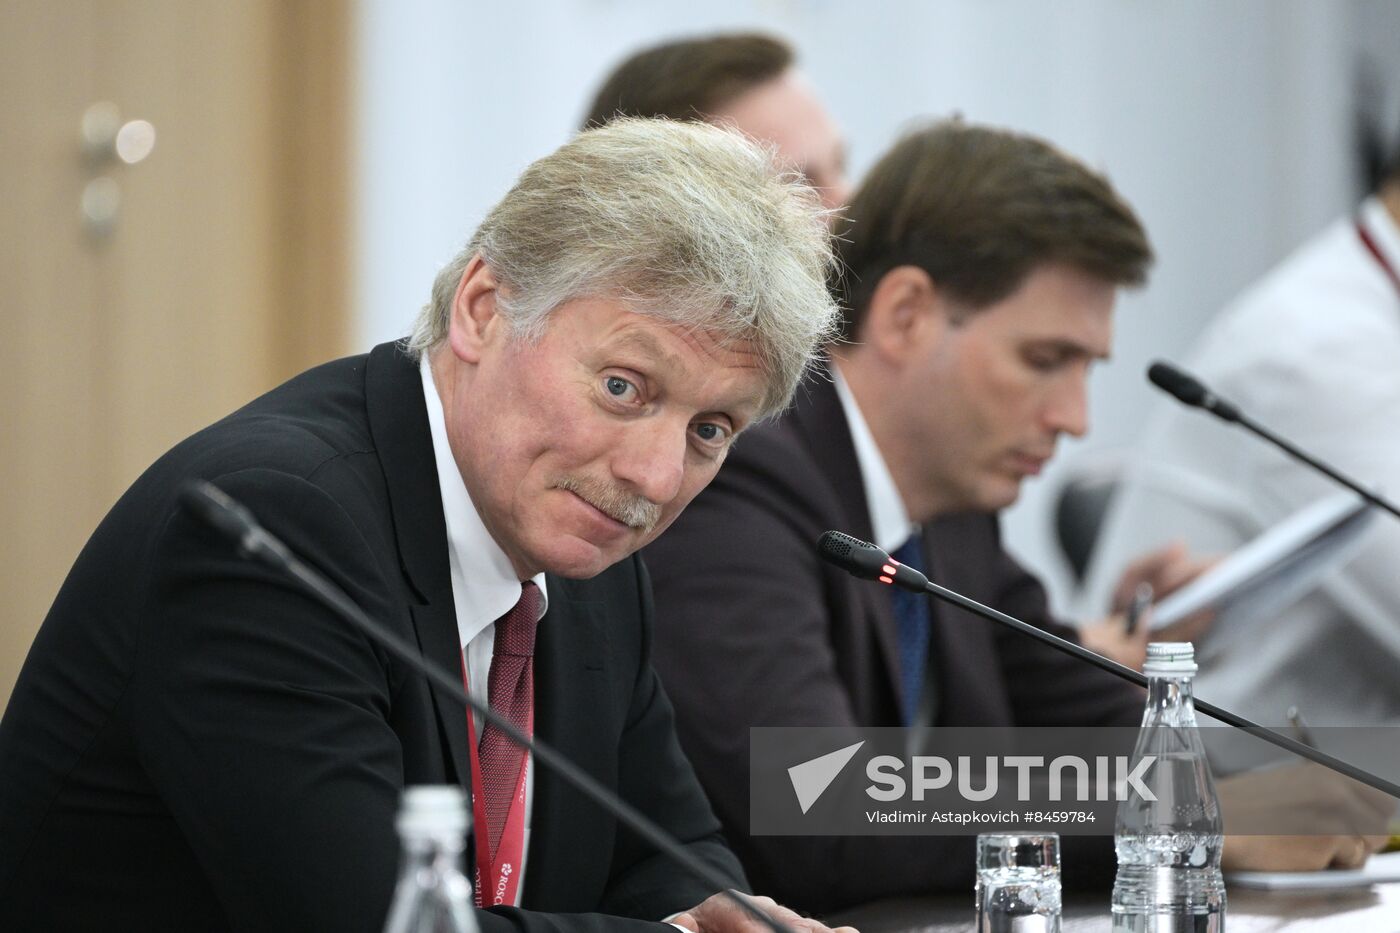 SPIEF-2023. Dmitry Peskov's briefing